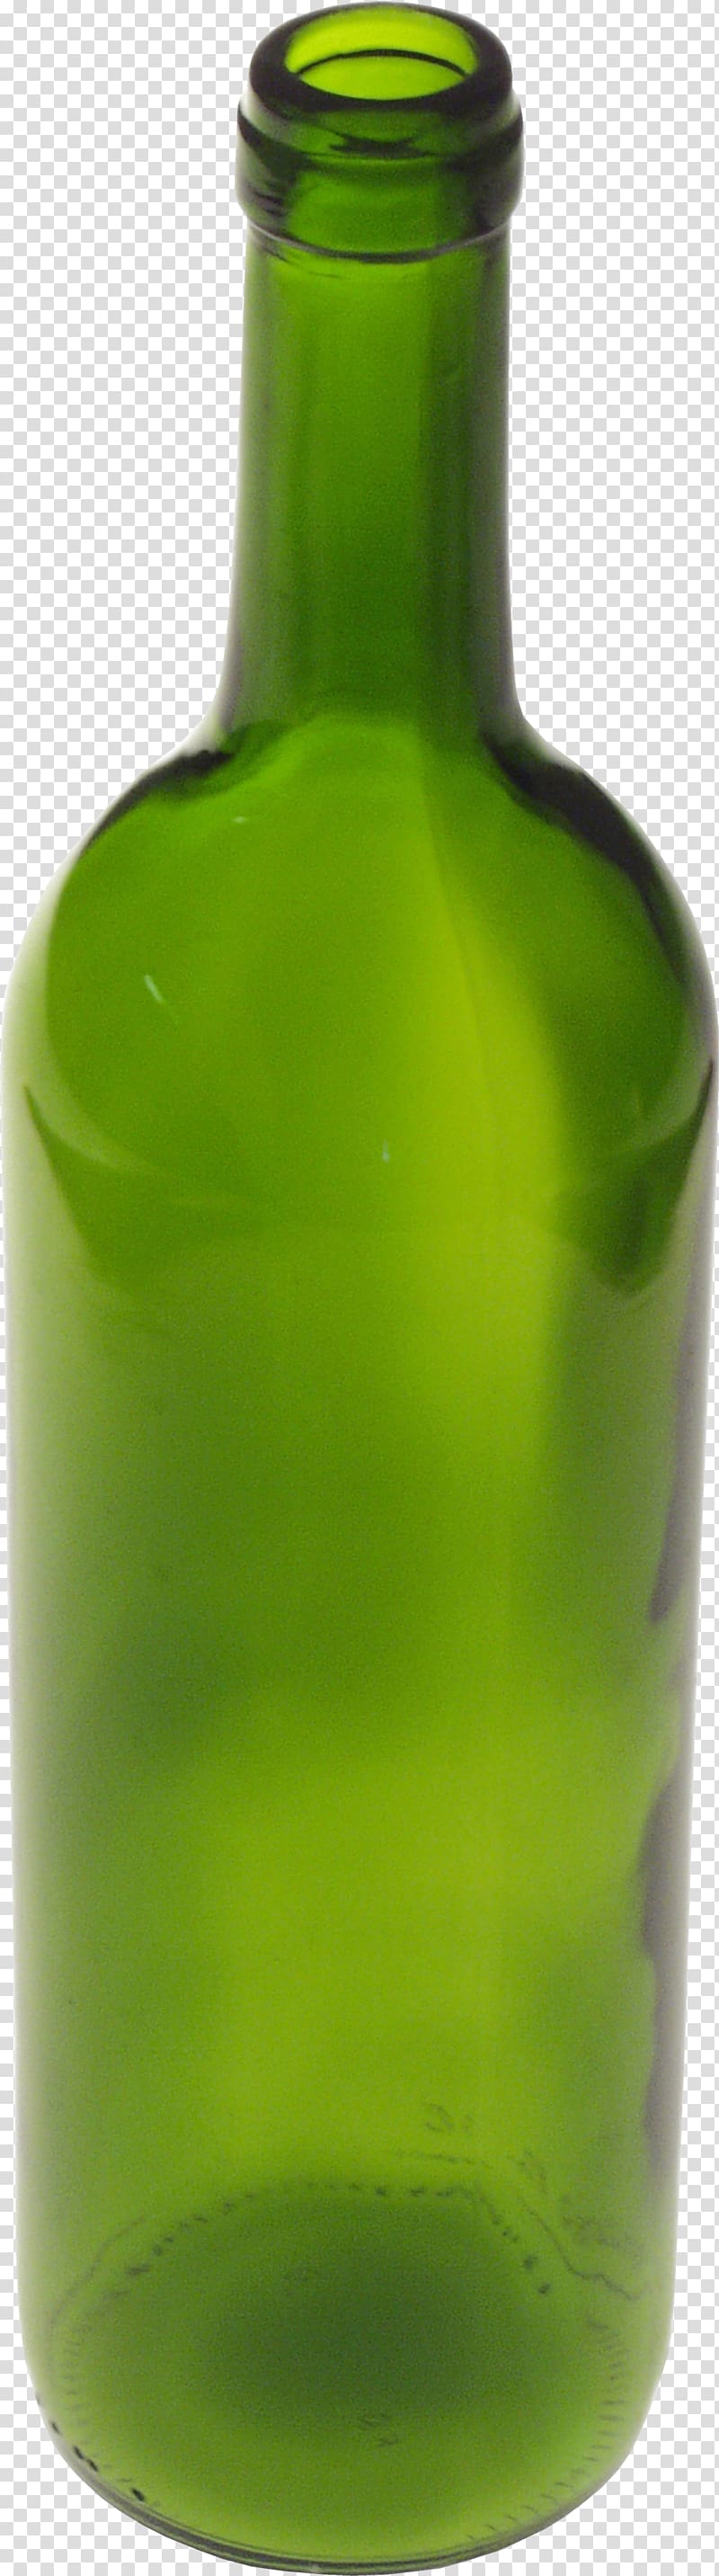 Bottle , greem glass bottle transparent background PNG clipart